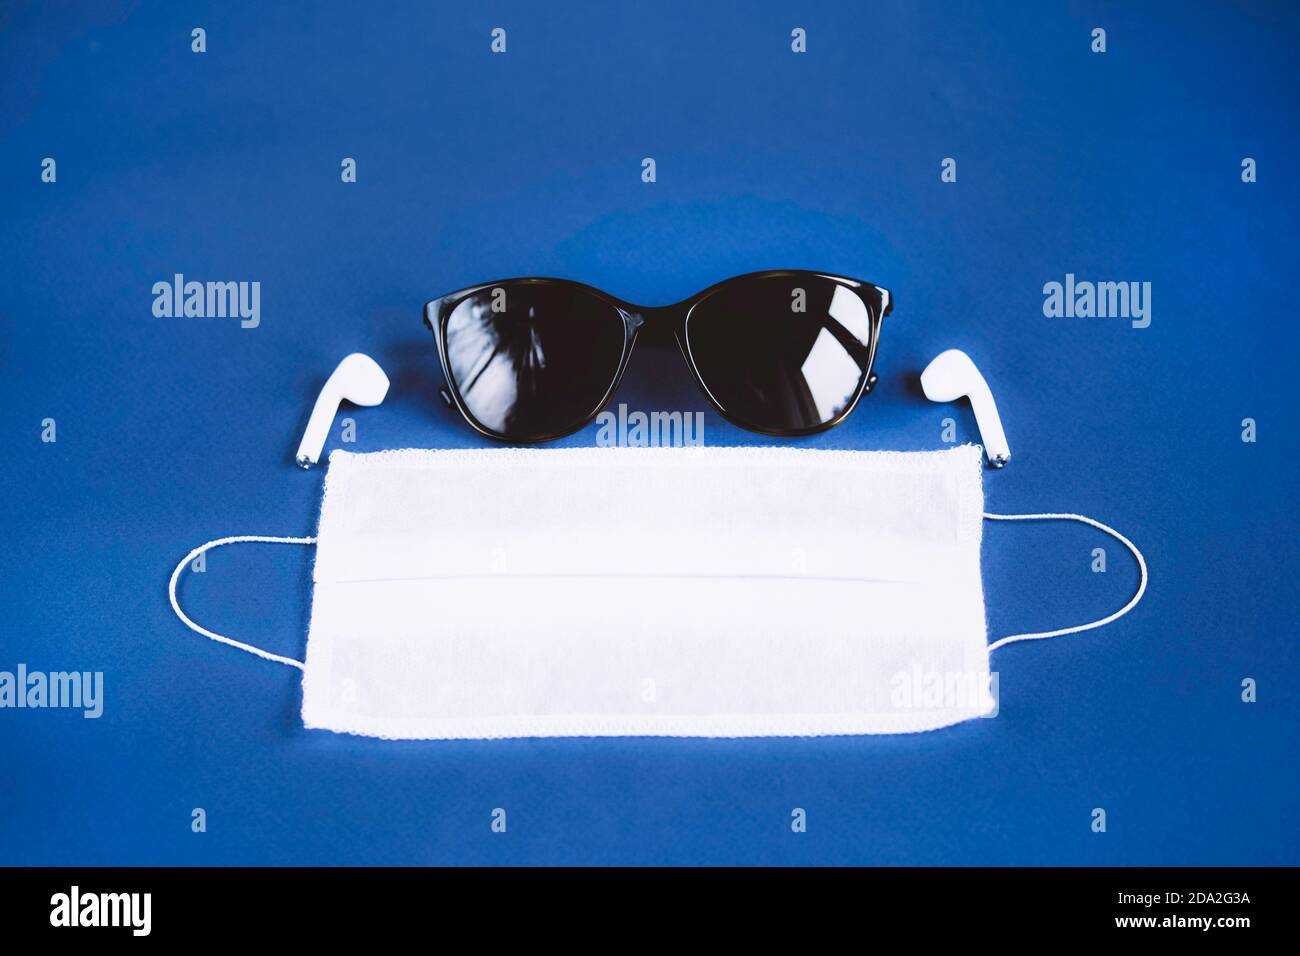 Moderne Person wesentliche Accessoires auf dunkelblauem Hintergrund. Sonnenbrille, medizinische Maske und kabellose Kopfhörer. Trends 2020. Stockfoto